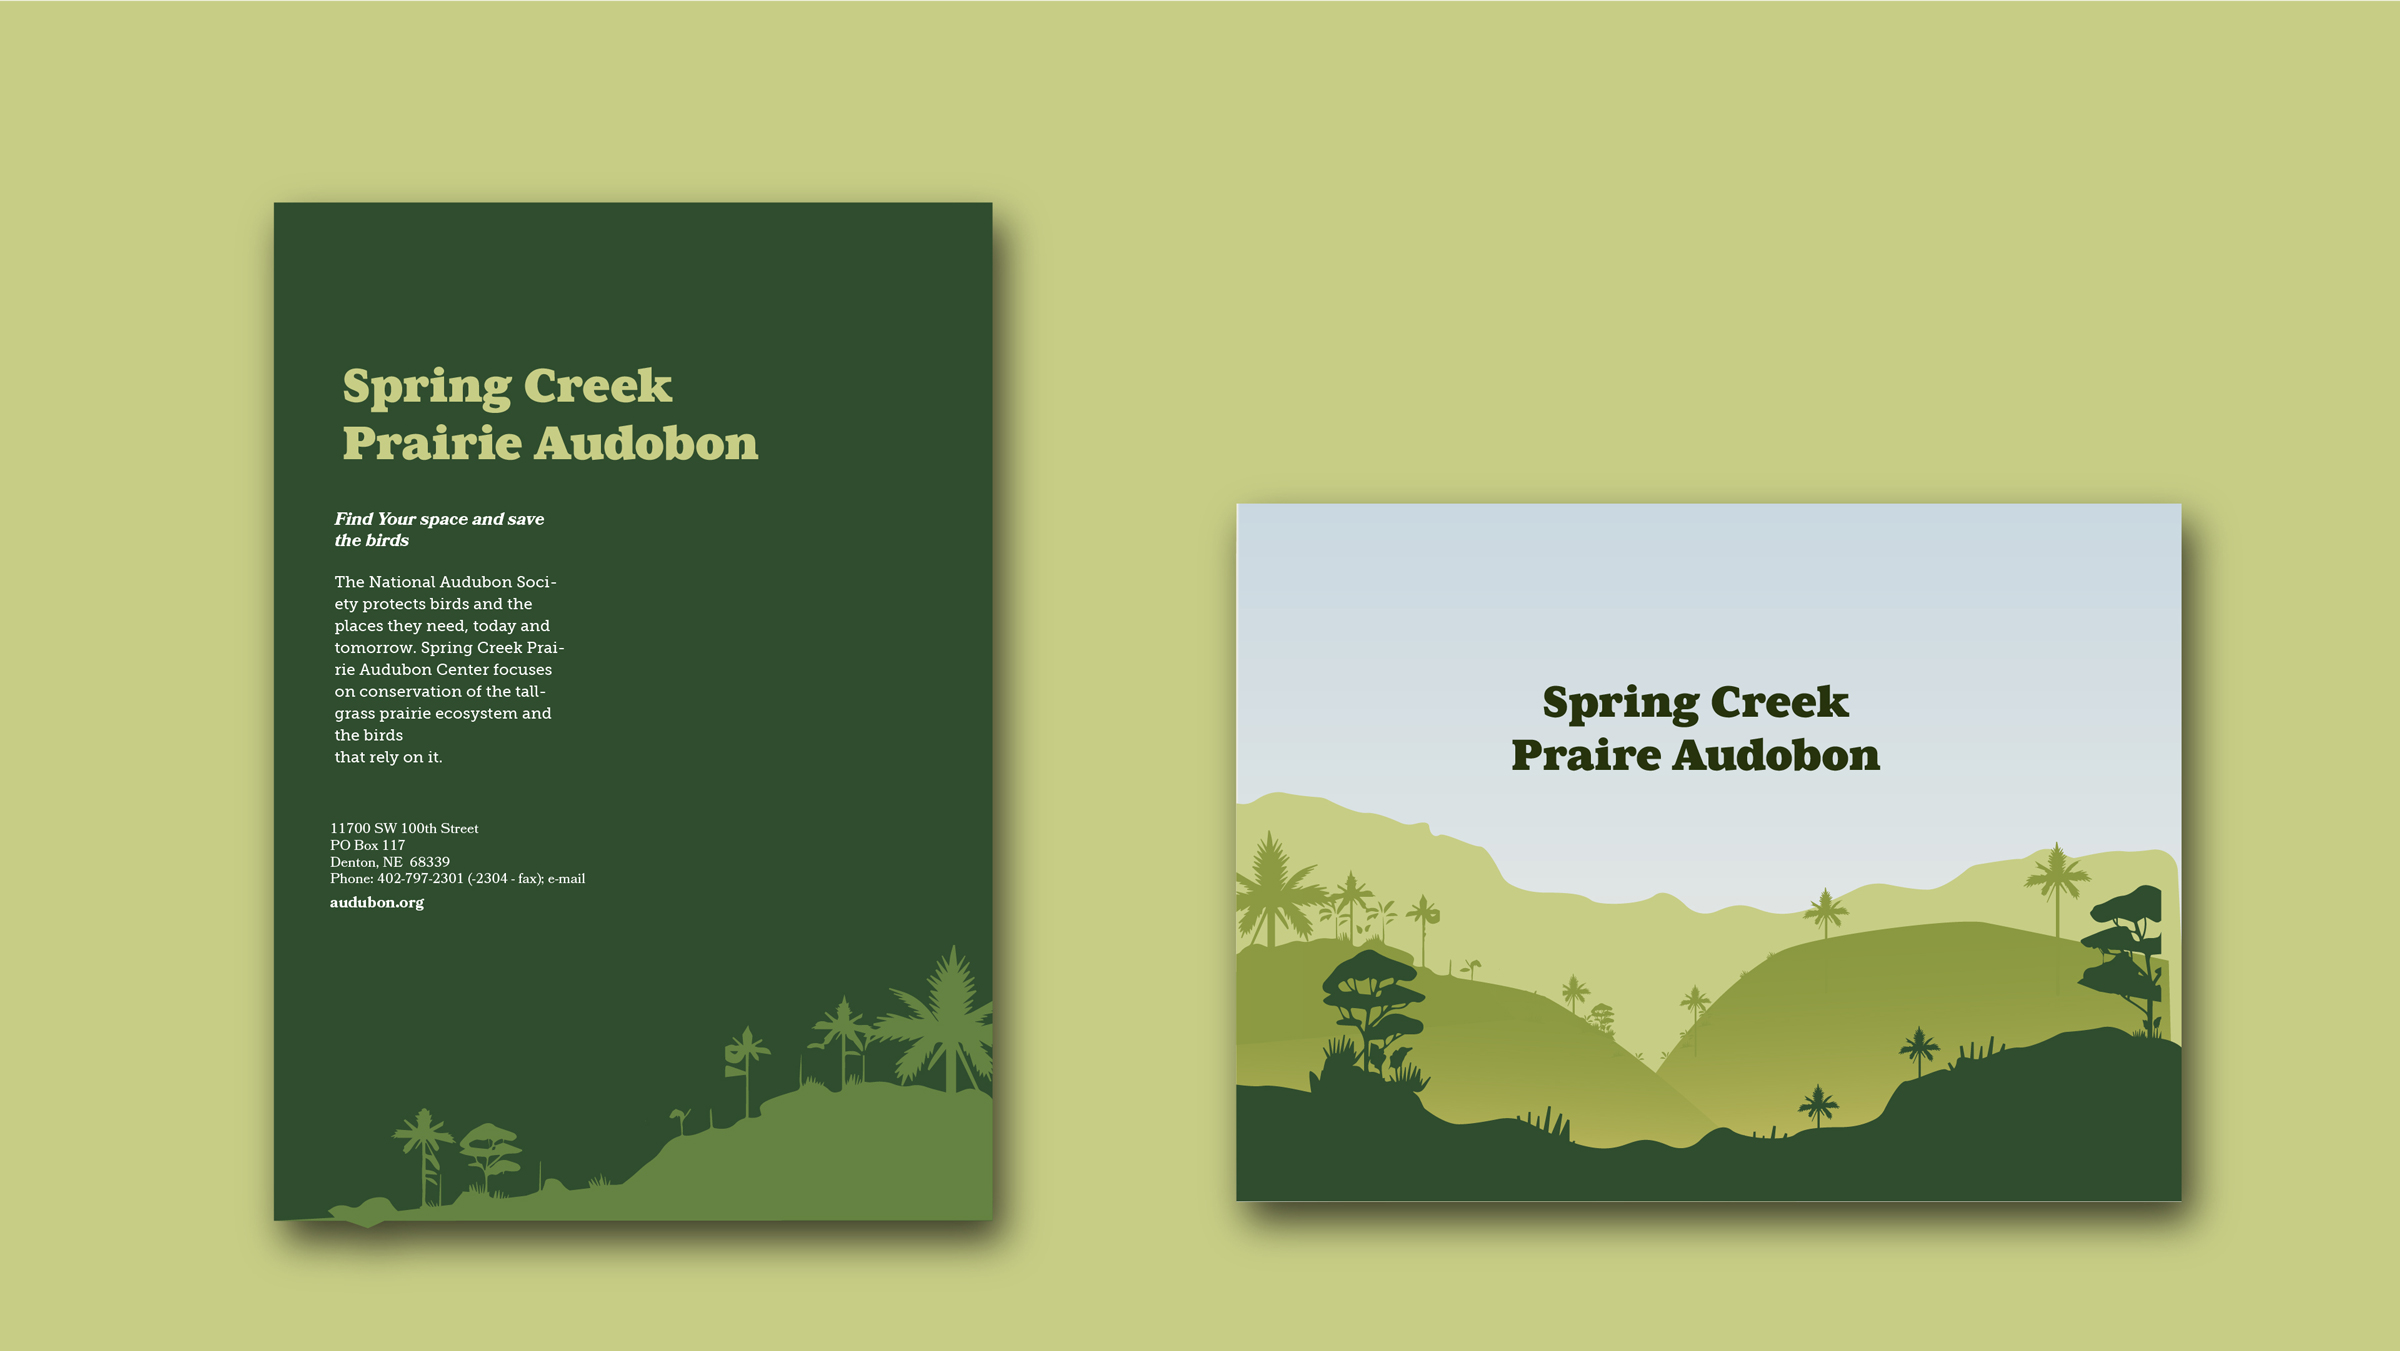 Spring Creek handbill design